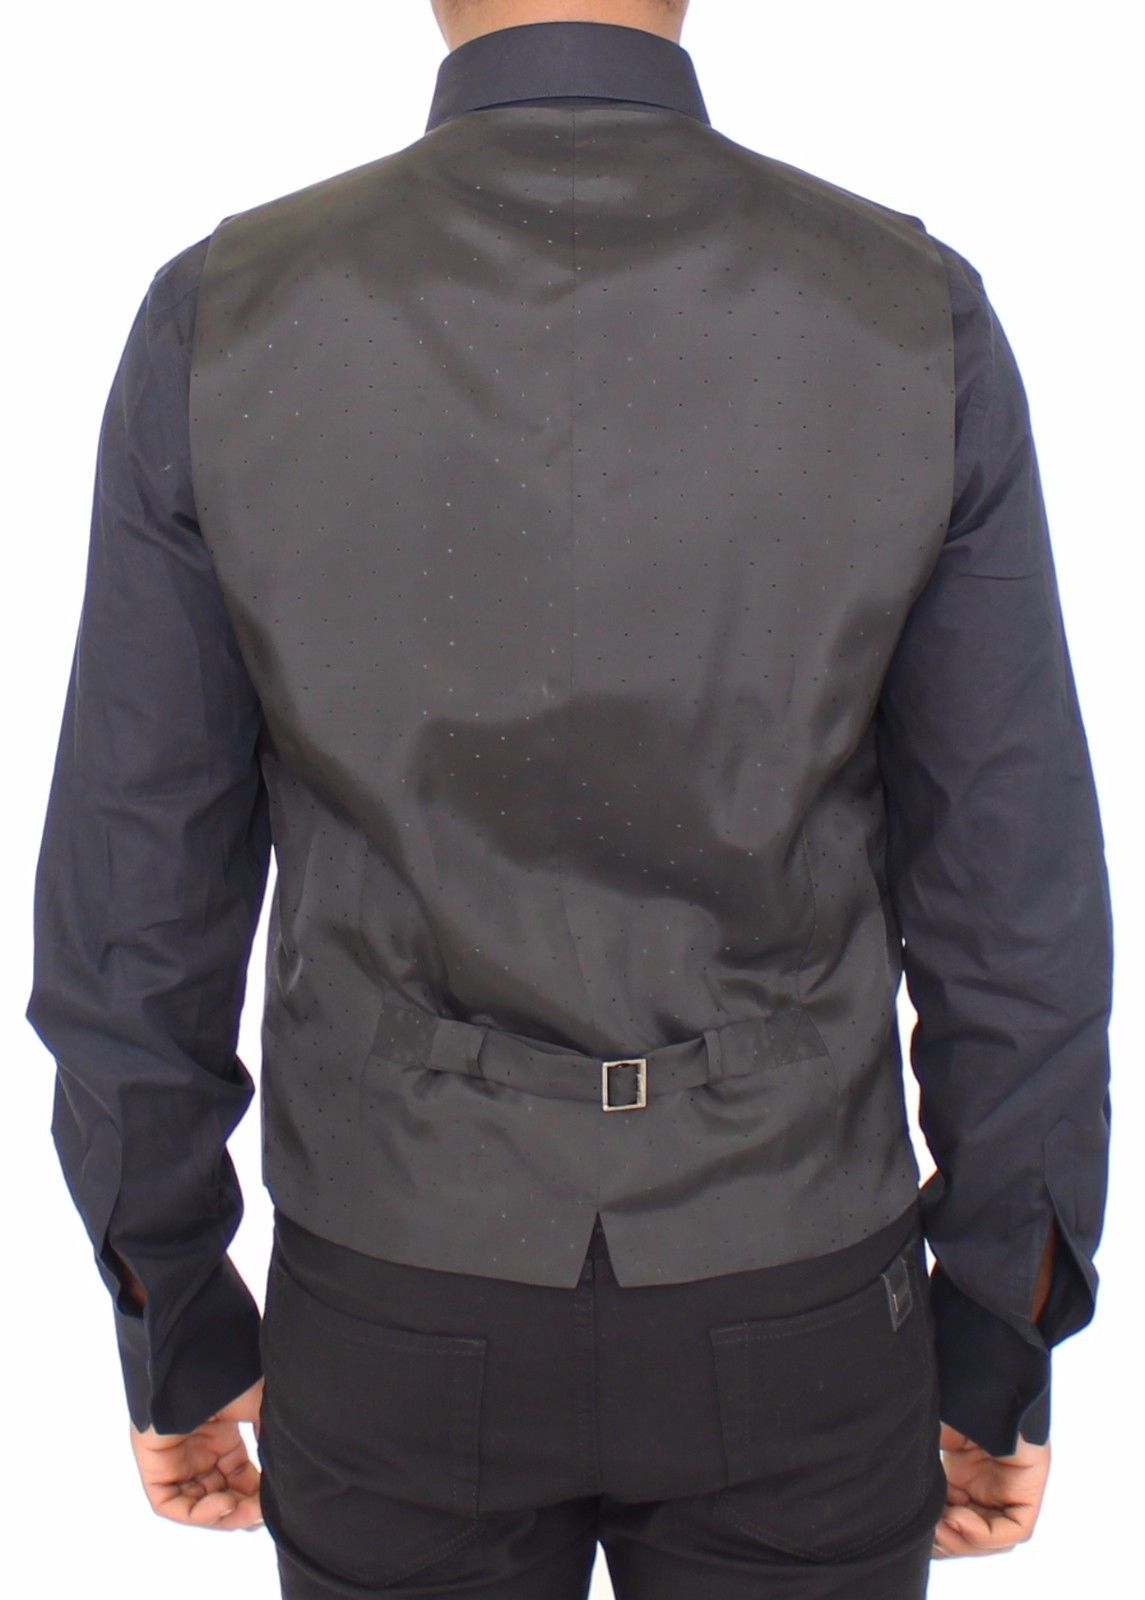 Gray Wool Stretch Dress Vest Jacket Blazer